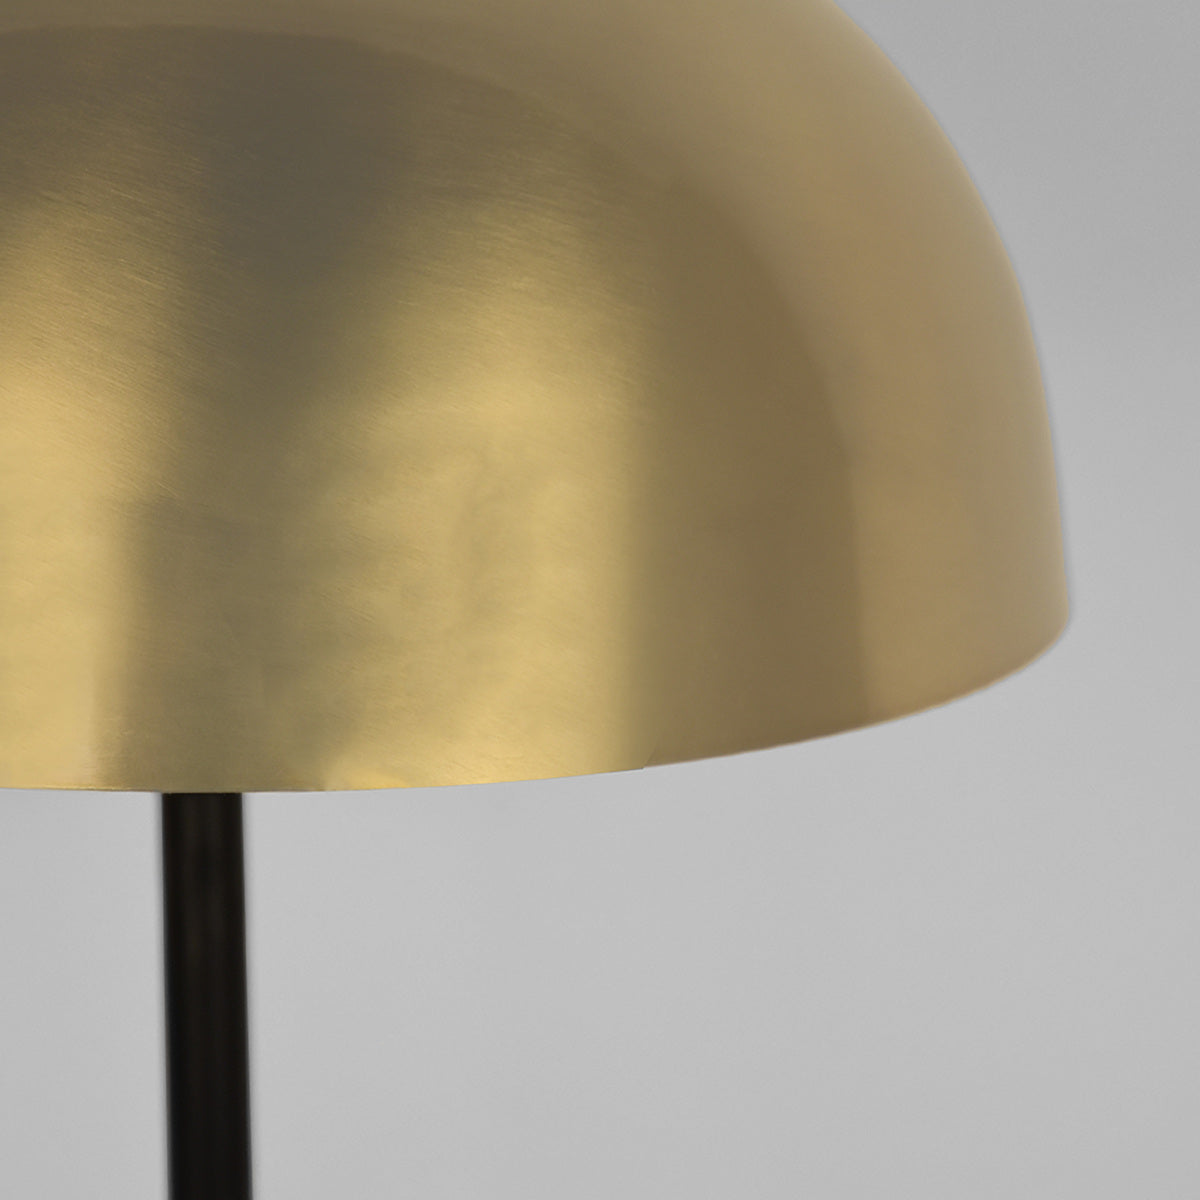 LABEL51 Tafellamp Globe - Antiek goud - Metaal